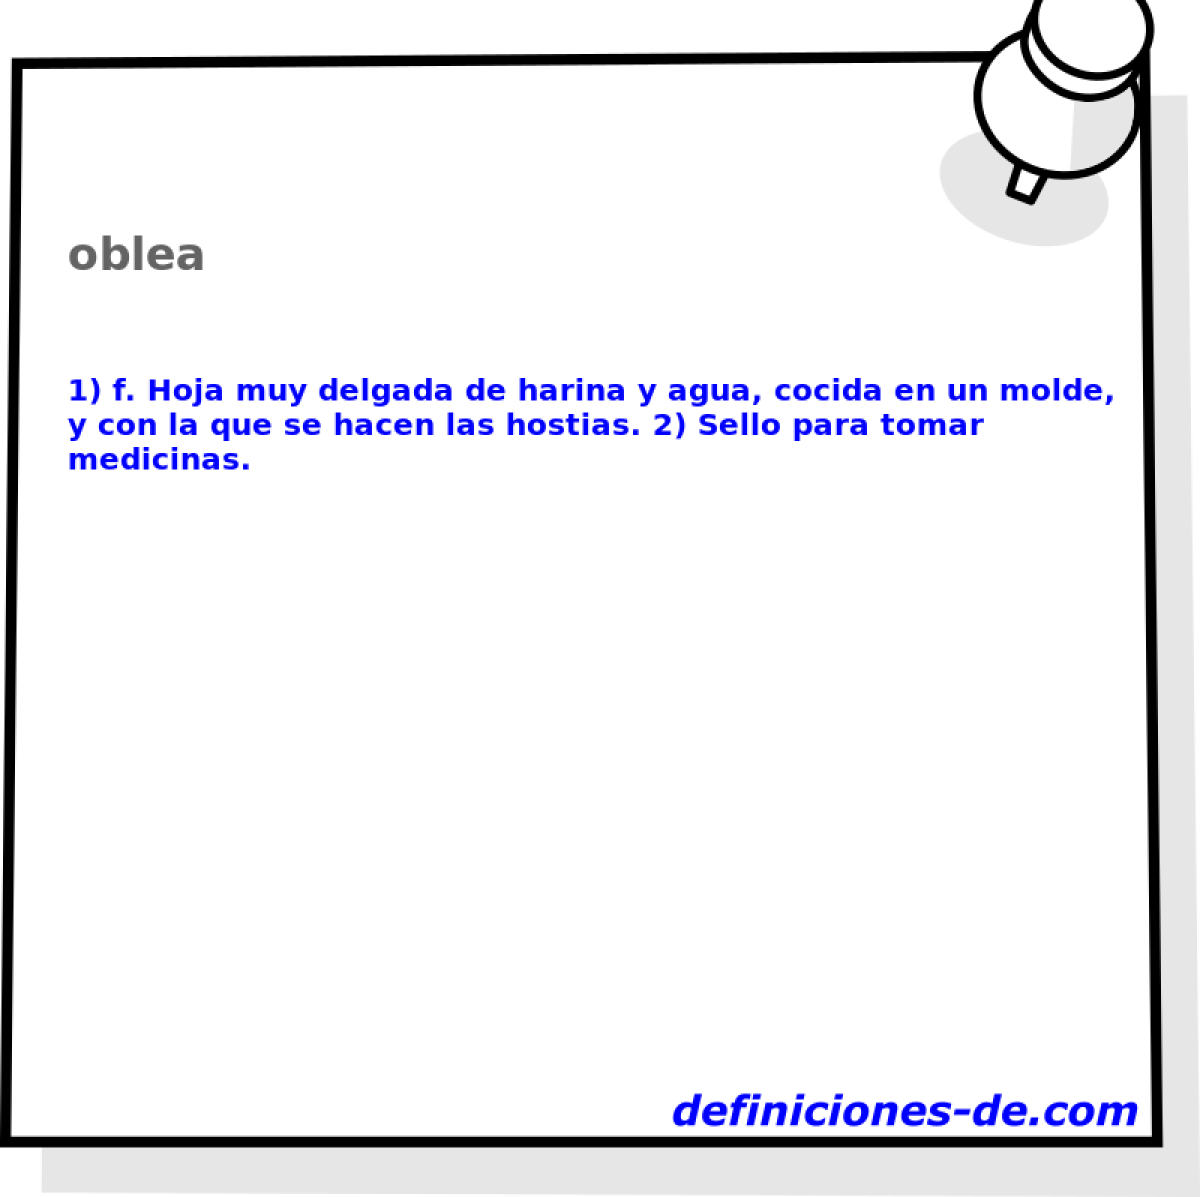 oblea 